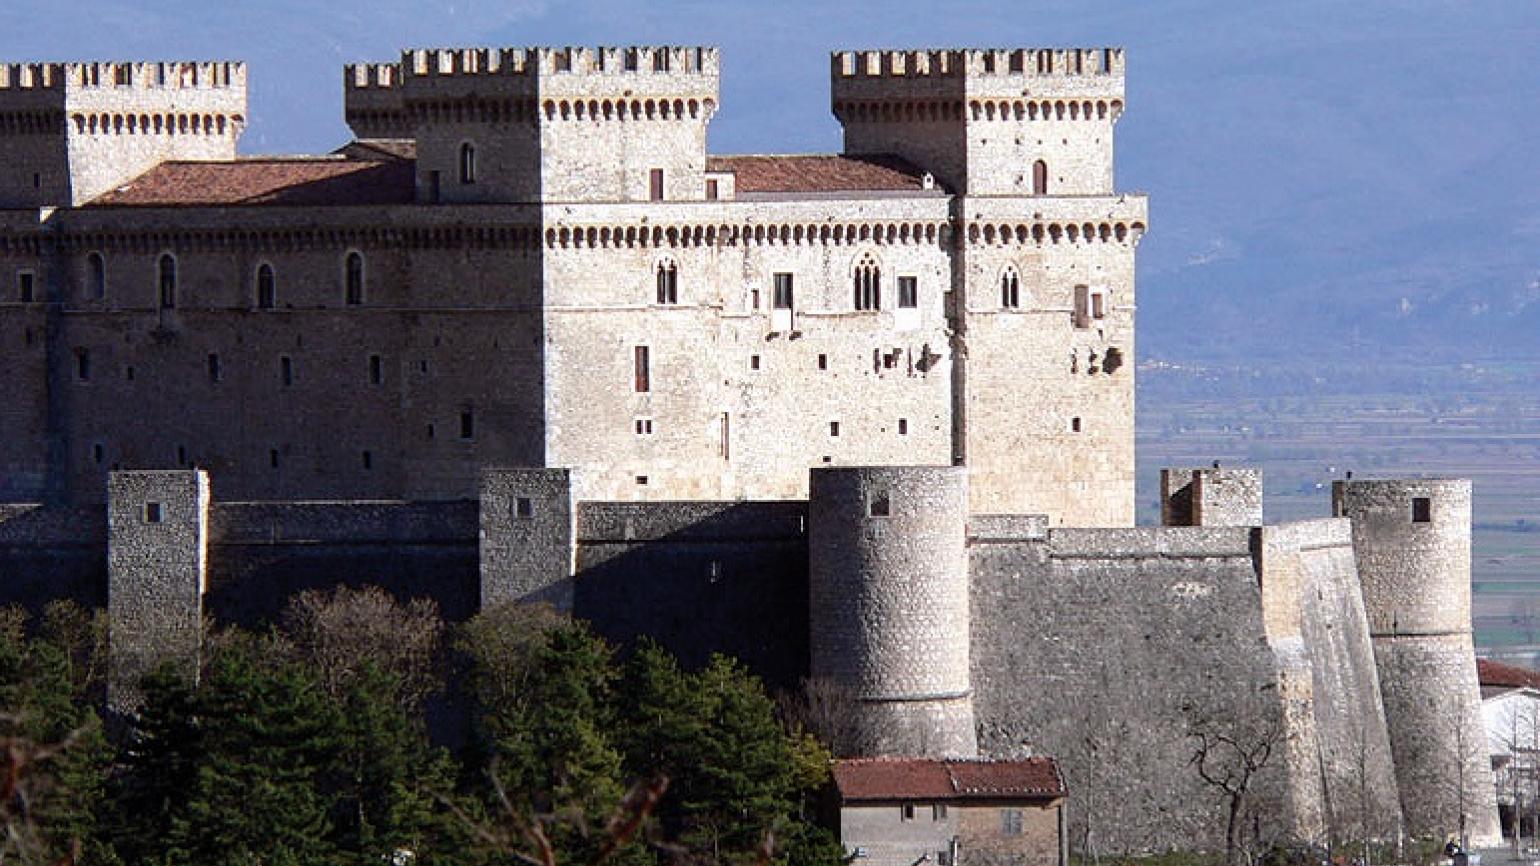  Celano (Aq), il Castello, panorama (foto Archivio Regione Abruzzo )